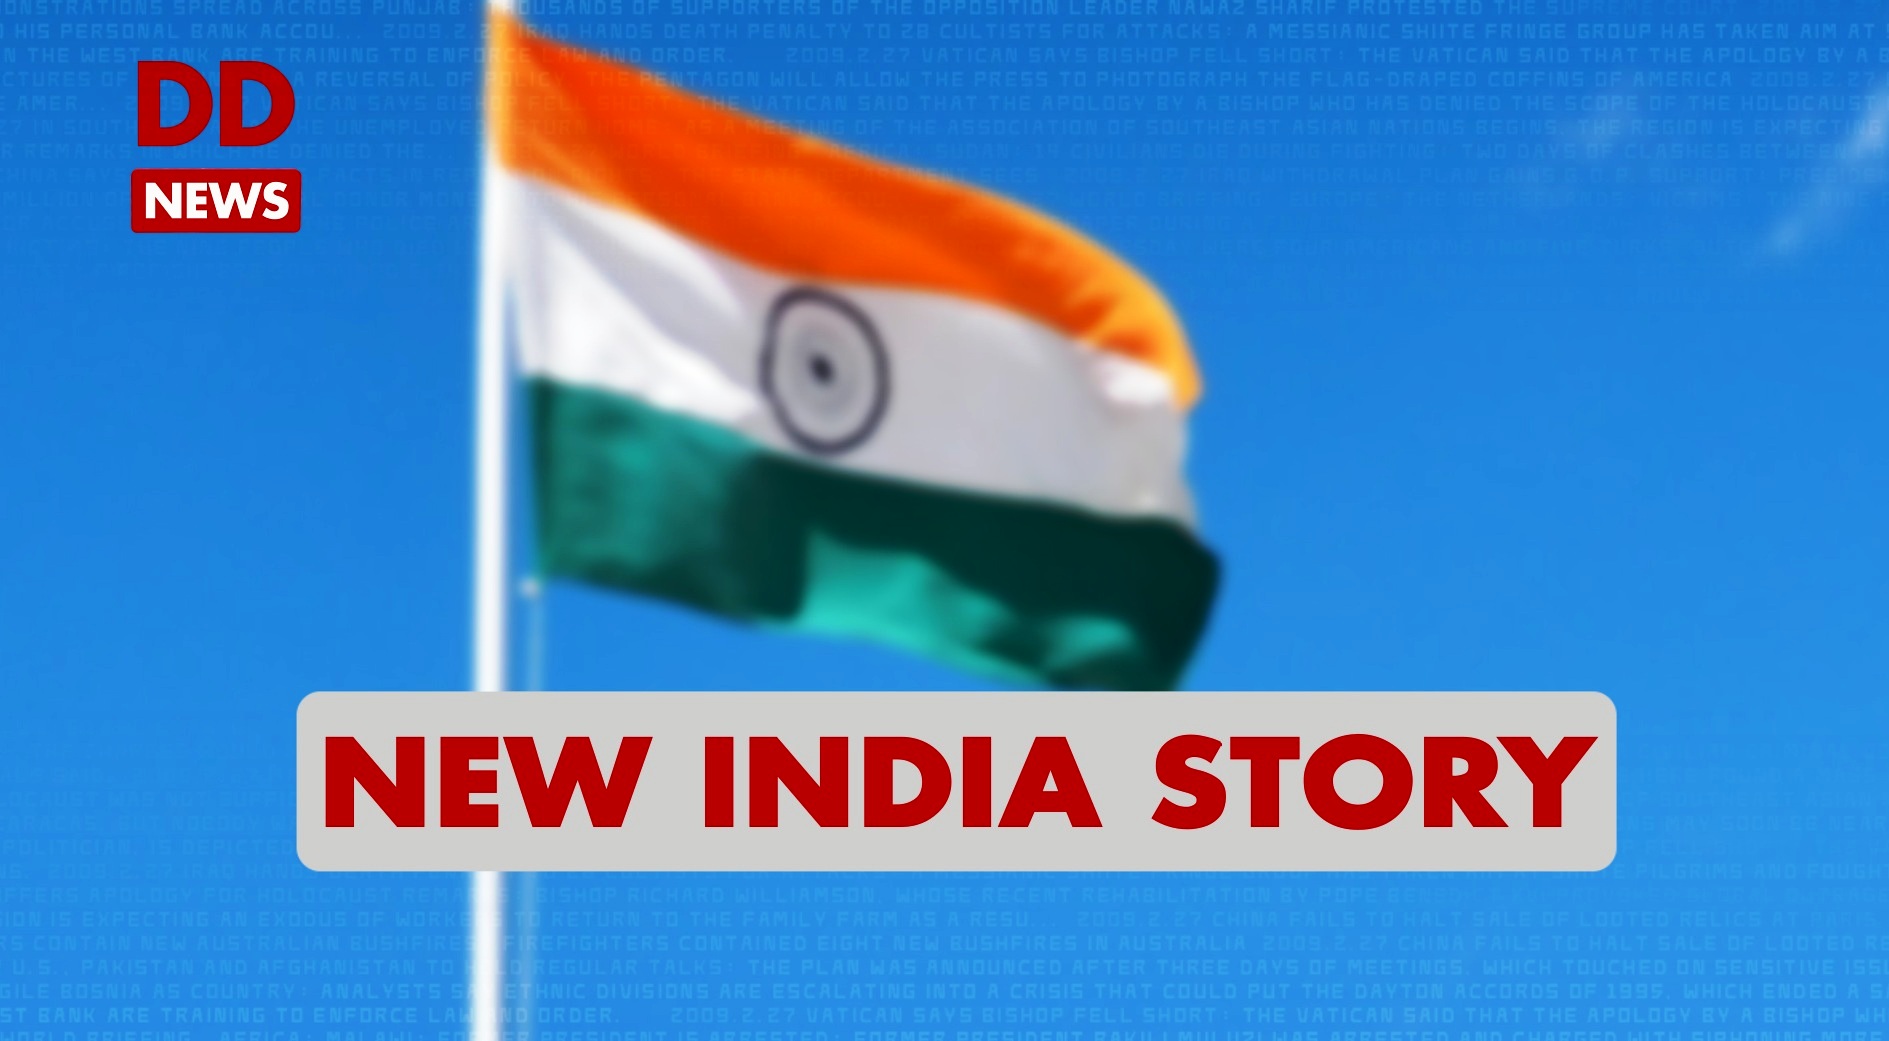 New India Story / Telangana / Mehboobabad / Digital India